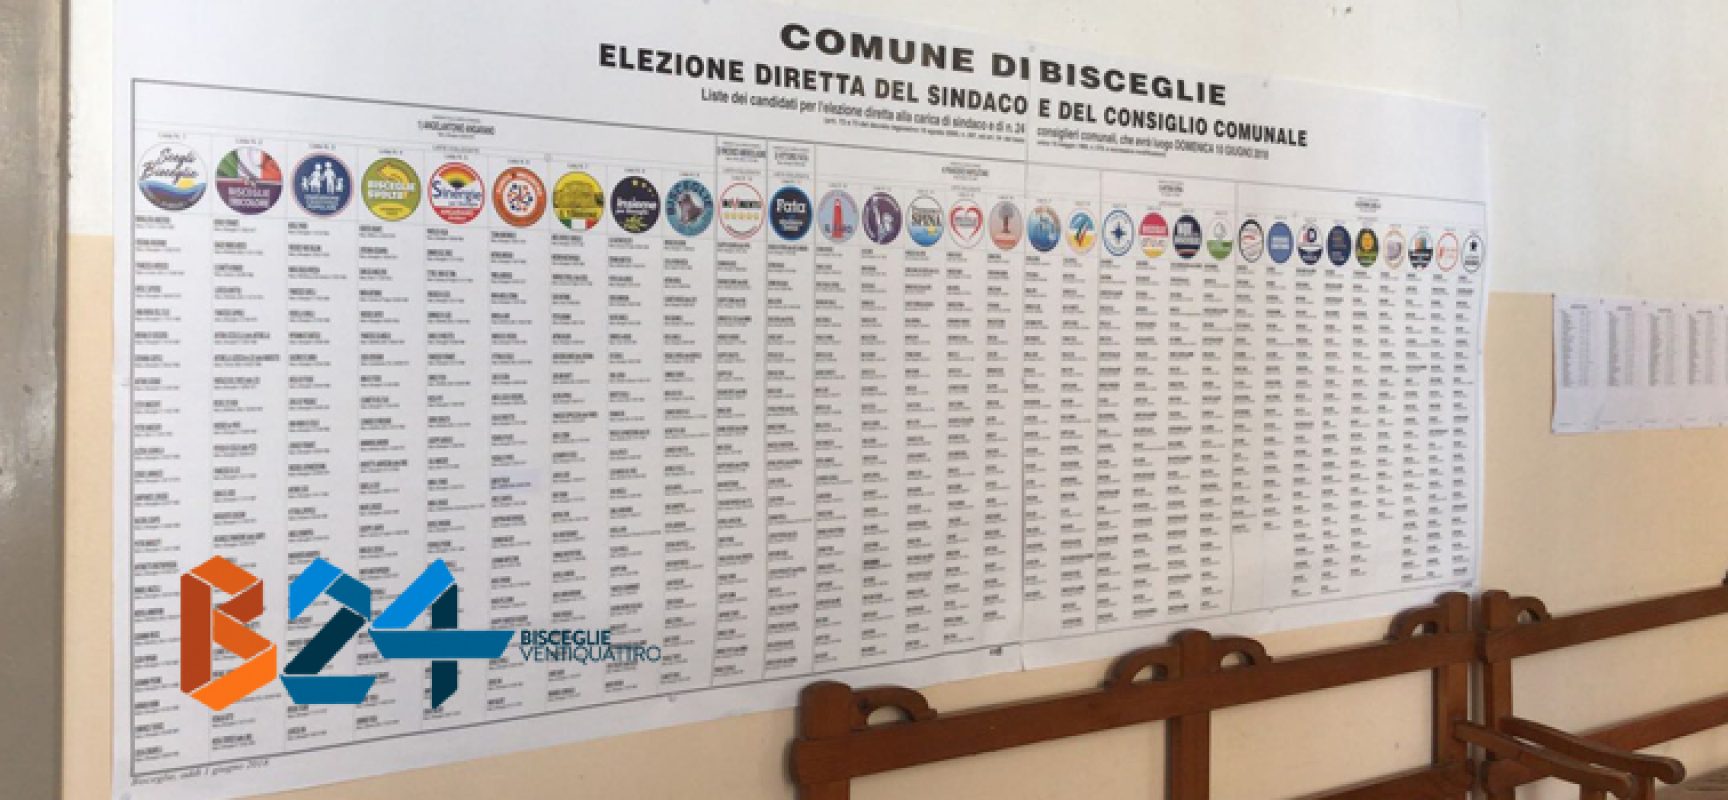 Amministrative 2018, tutti i risultati DEFINITIVI delle liste e dei candidati sindaco